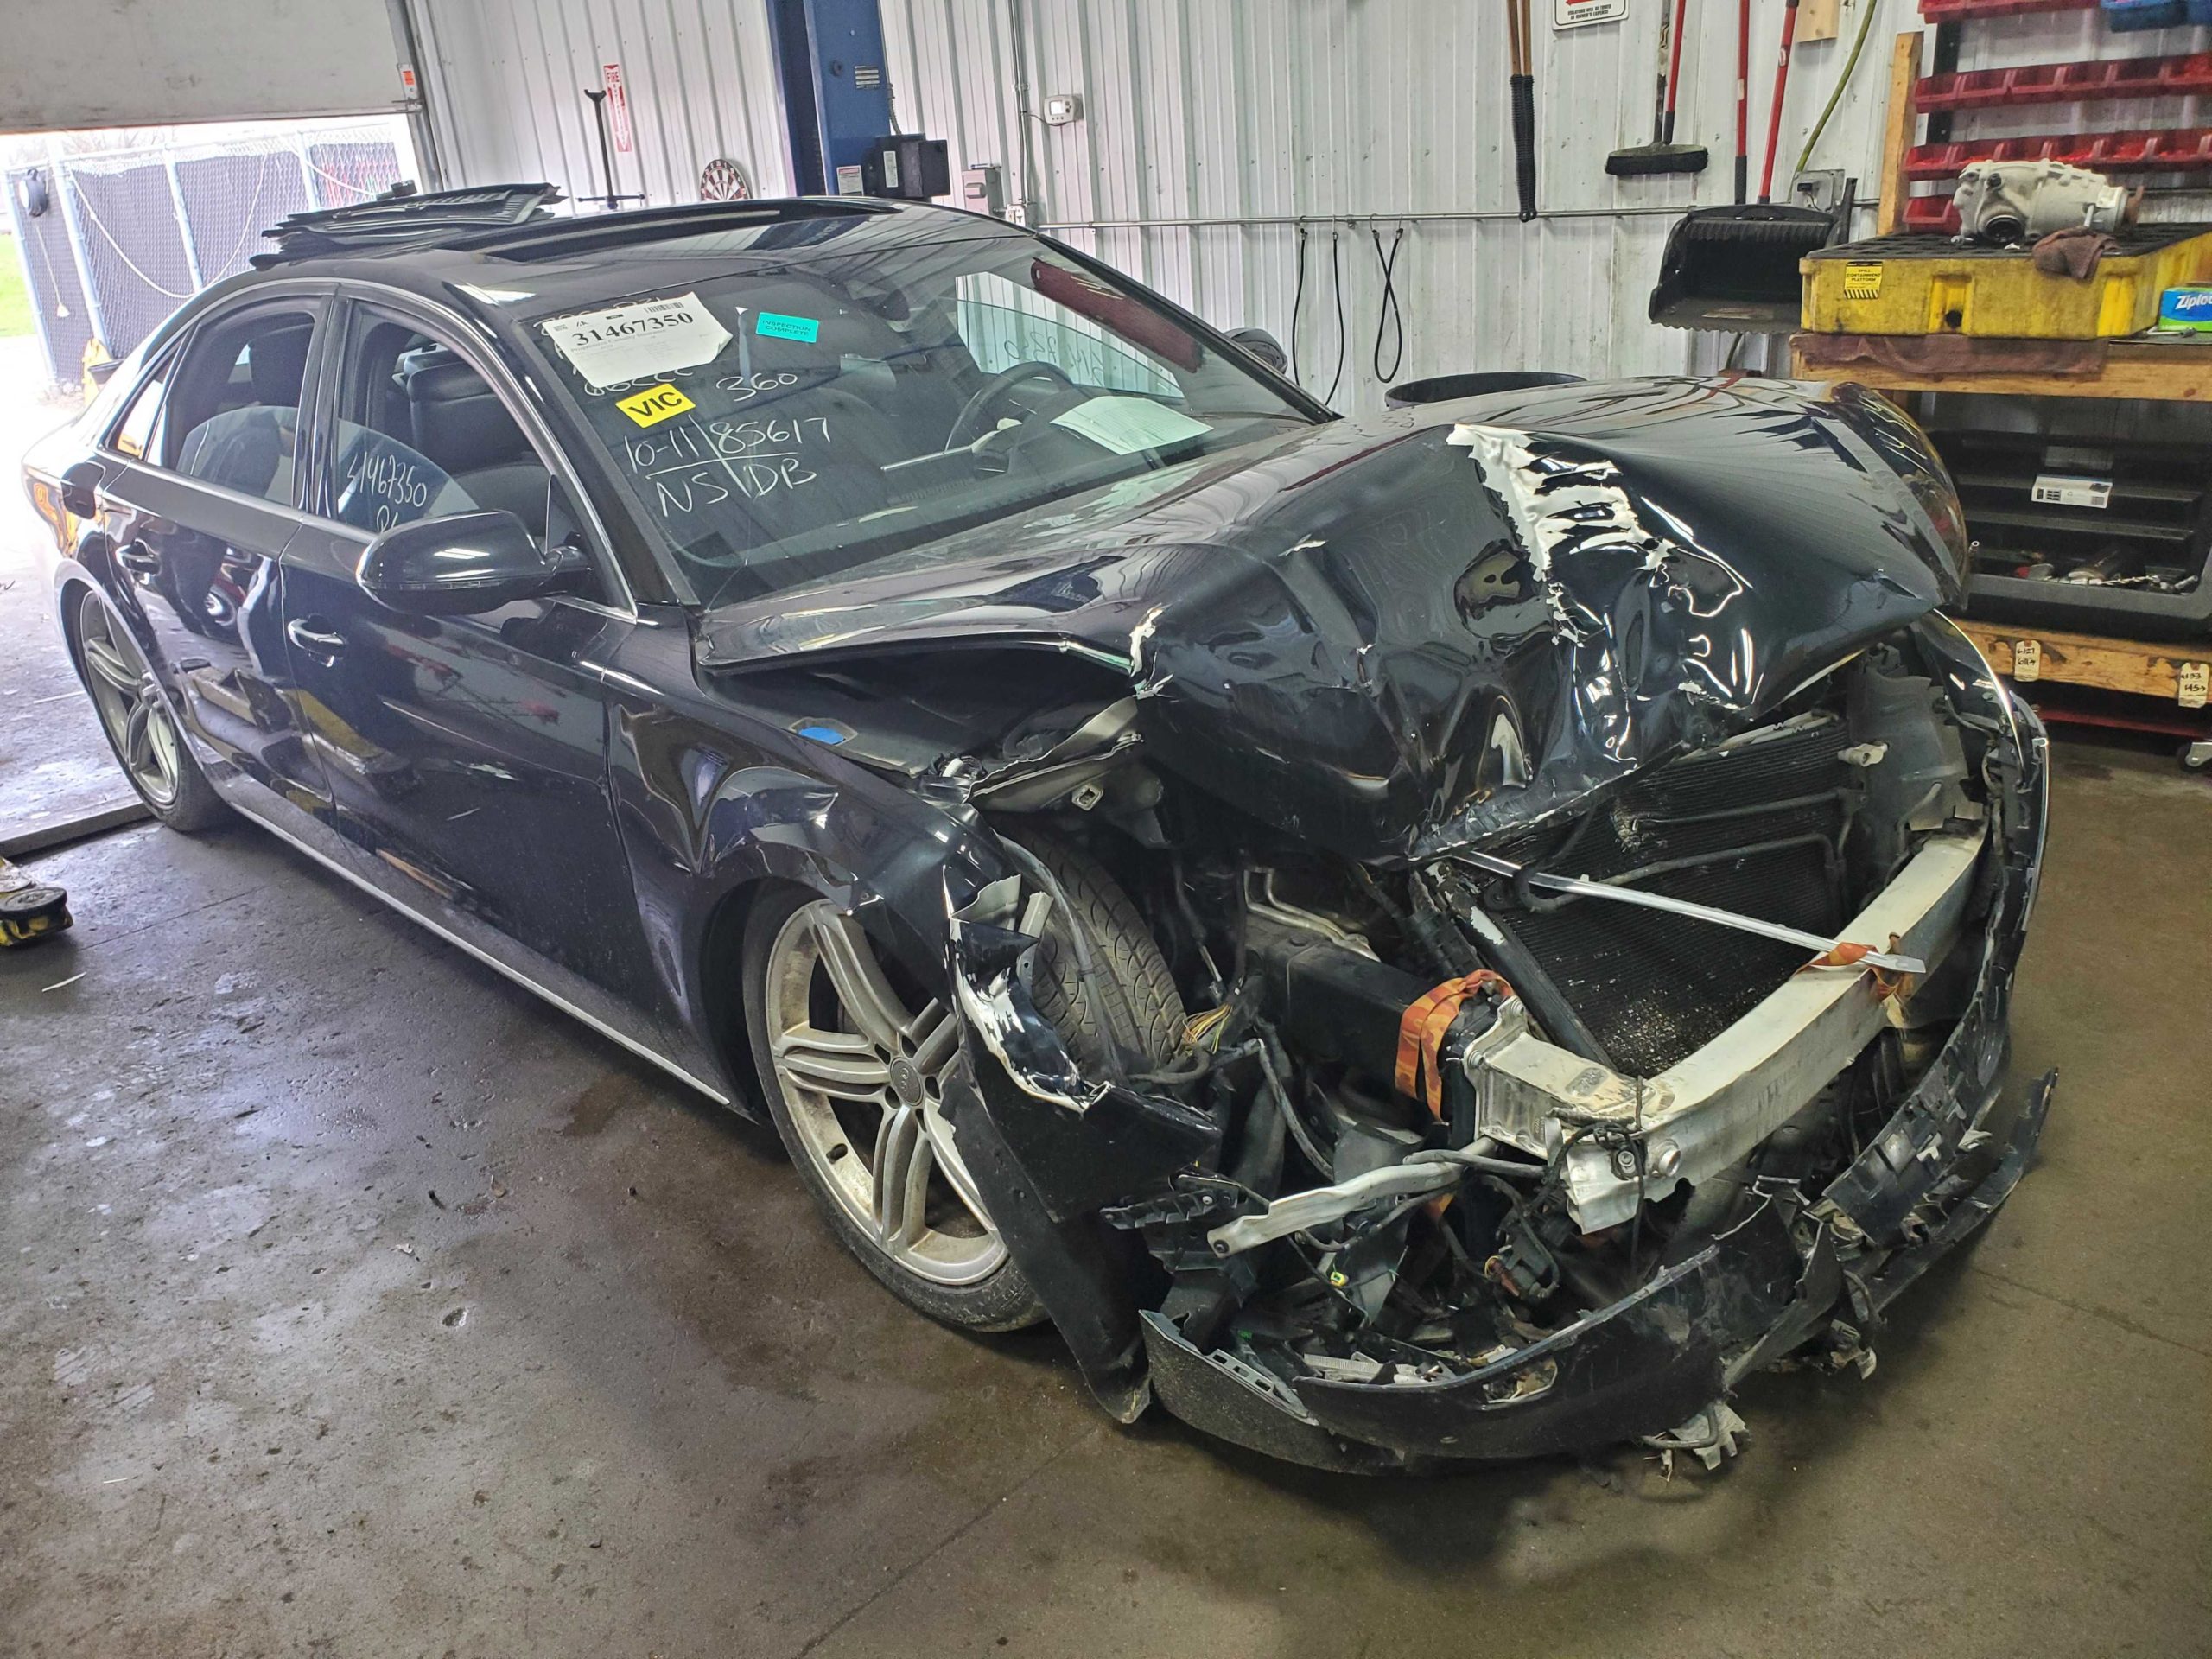 2013 Audi A8 crashed